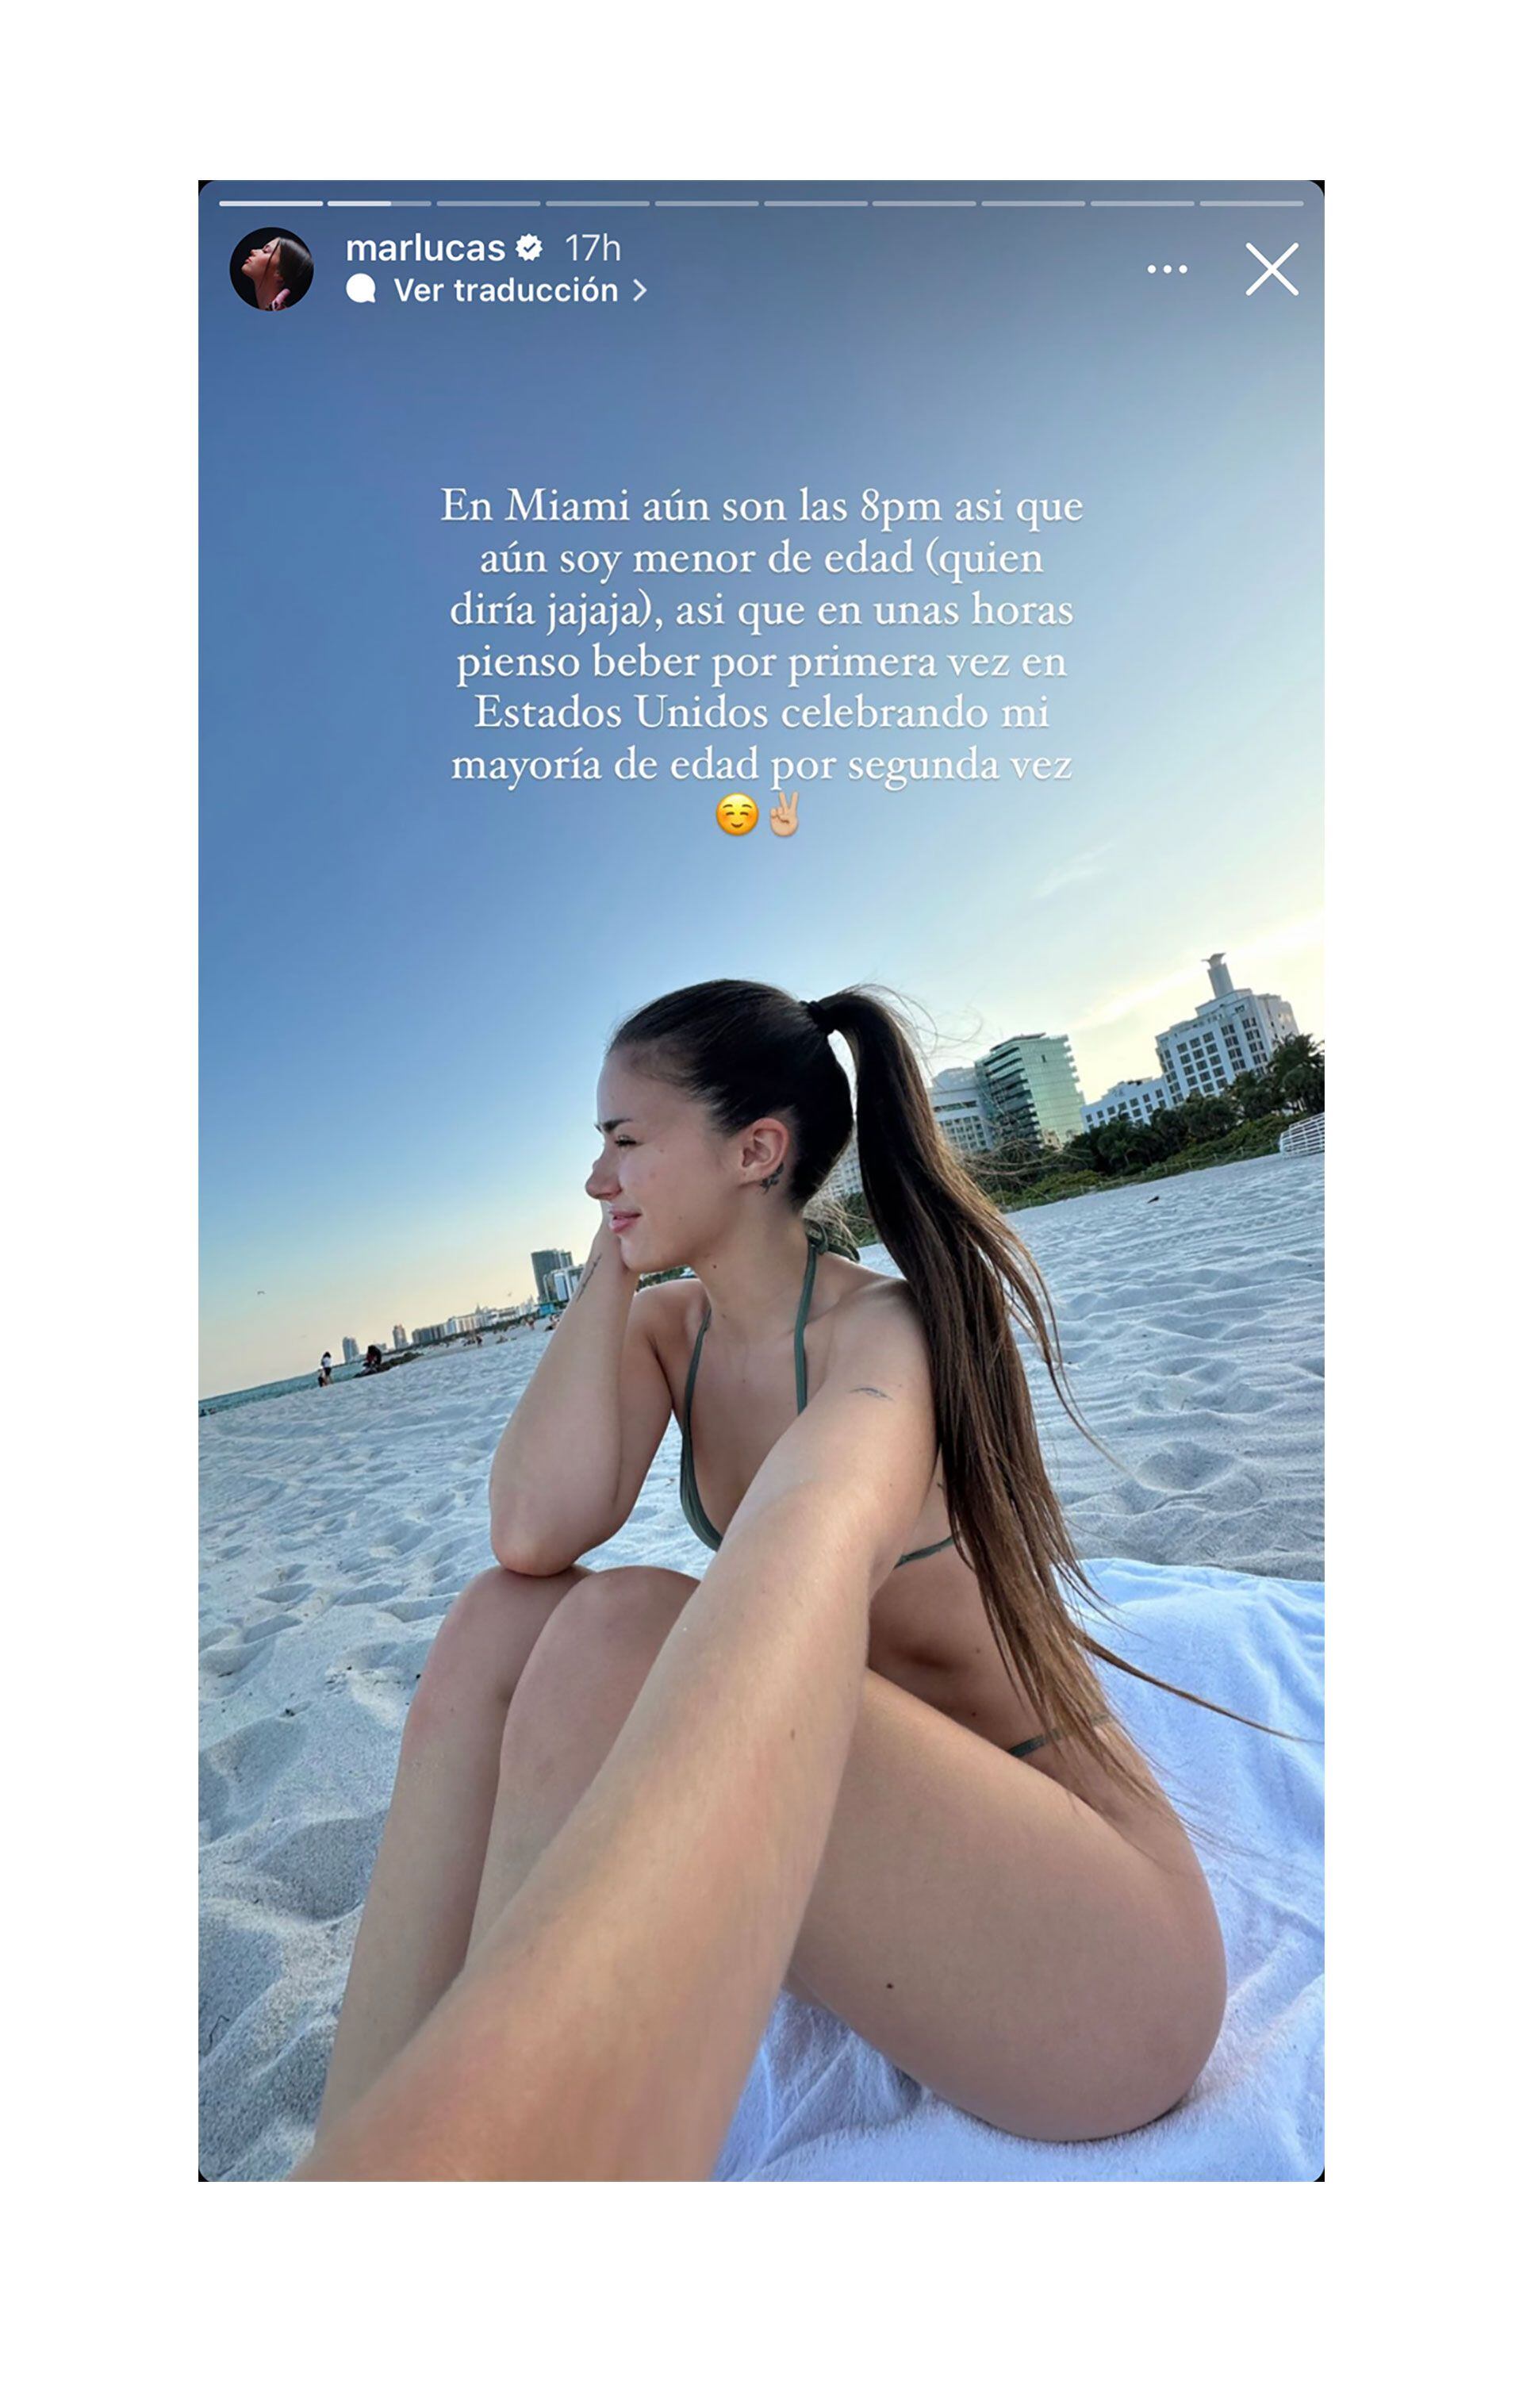 Romance confirmado: Rusherking y Mar Lucas, juntos en Miami festejando el cumpleaños de ella